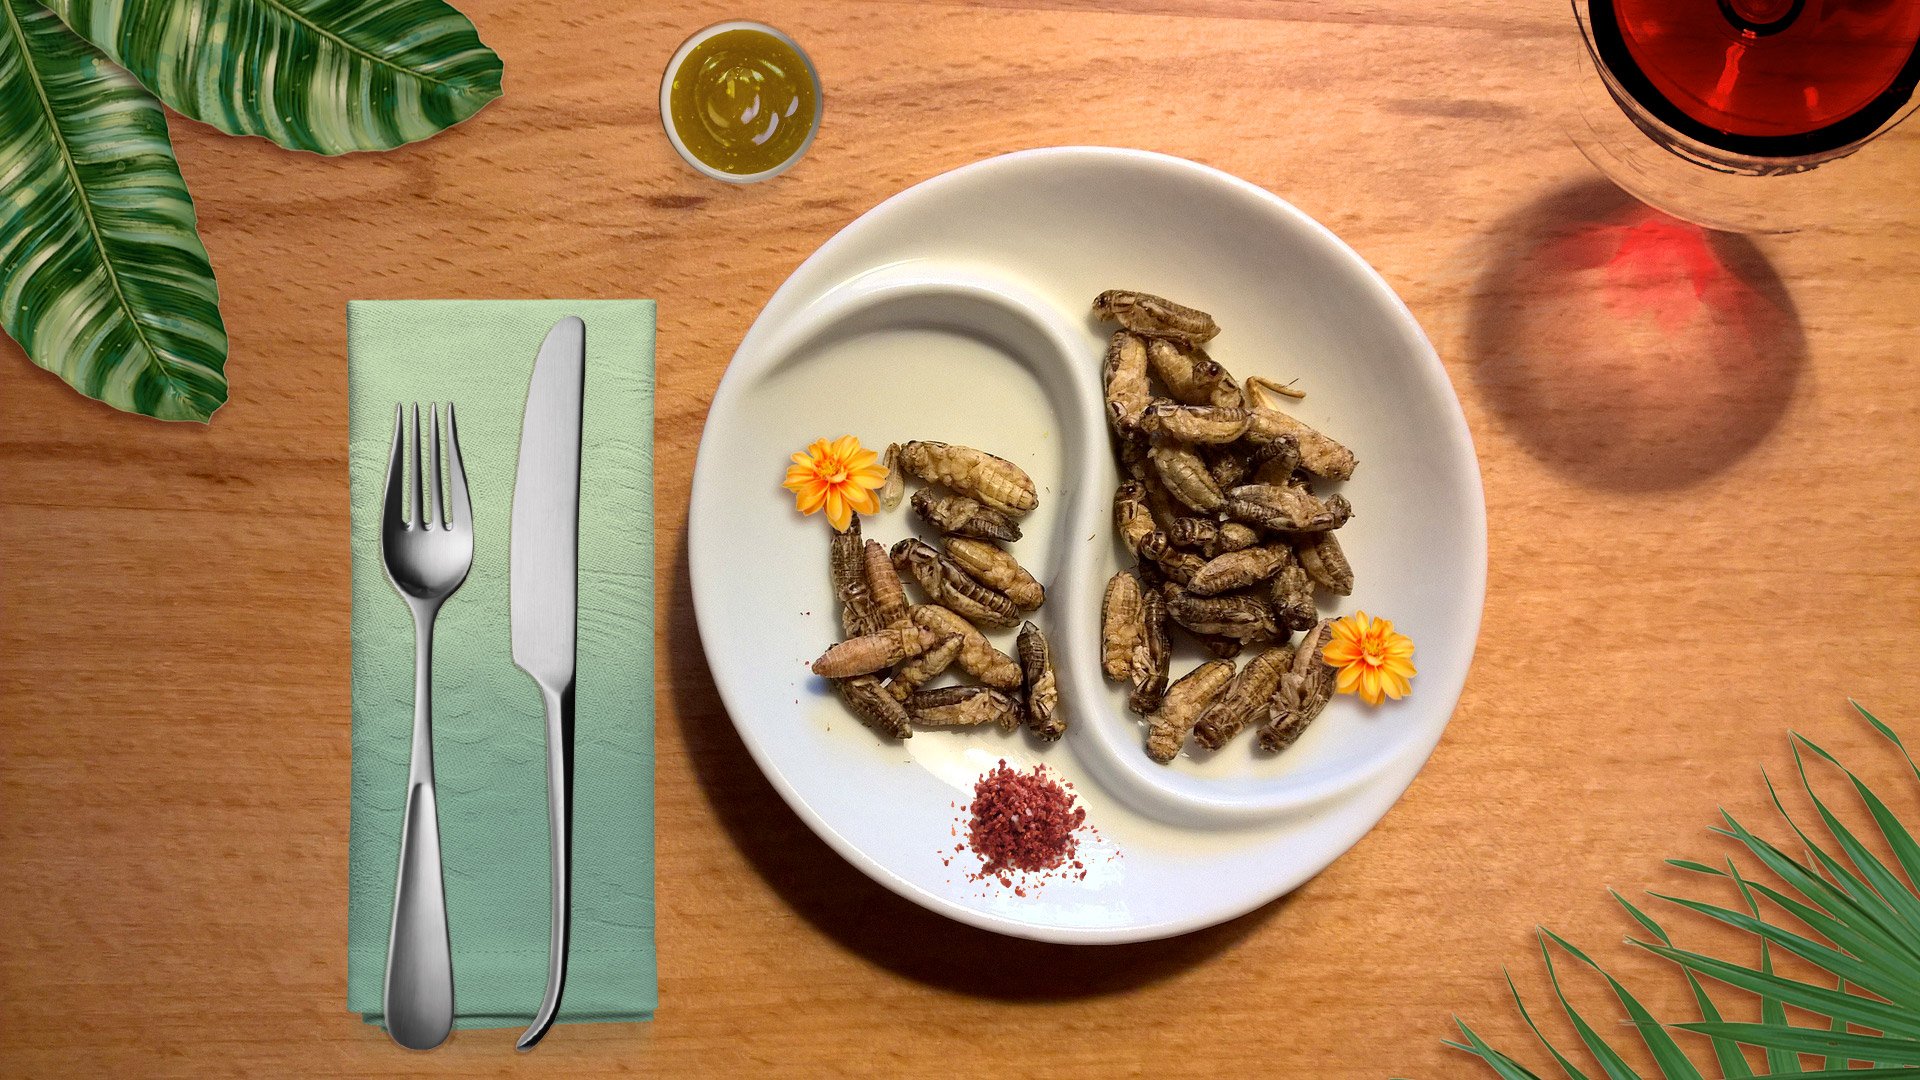 Mangereste mai degli insetti per pranzo o cena?